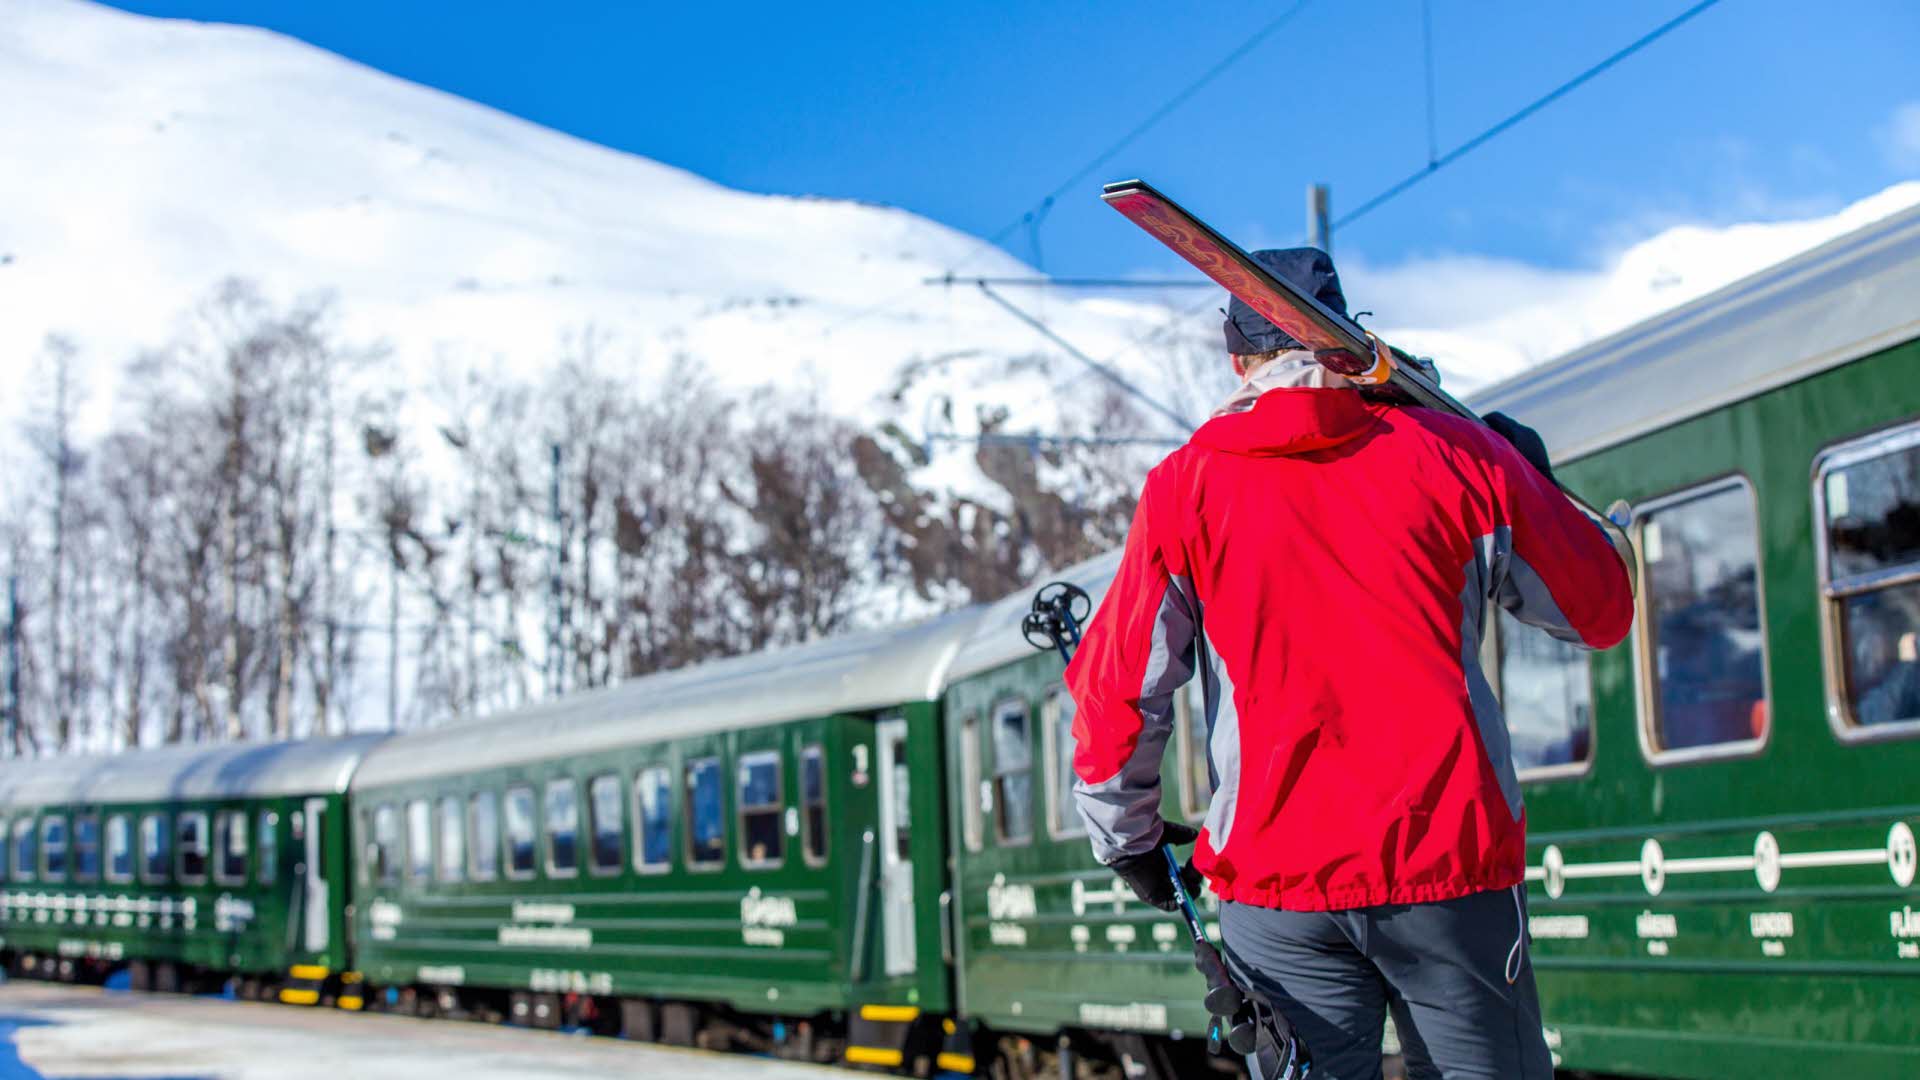 一个人在 Flam 铁路旁，肩上扛着滑雪板。周围是积雪覆盖的群山。